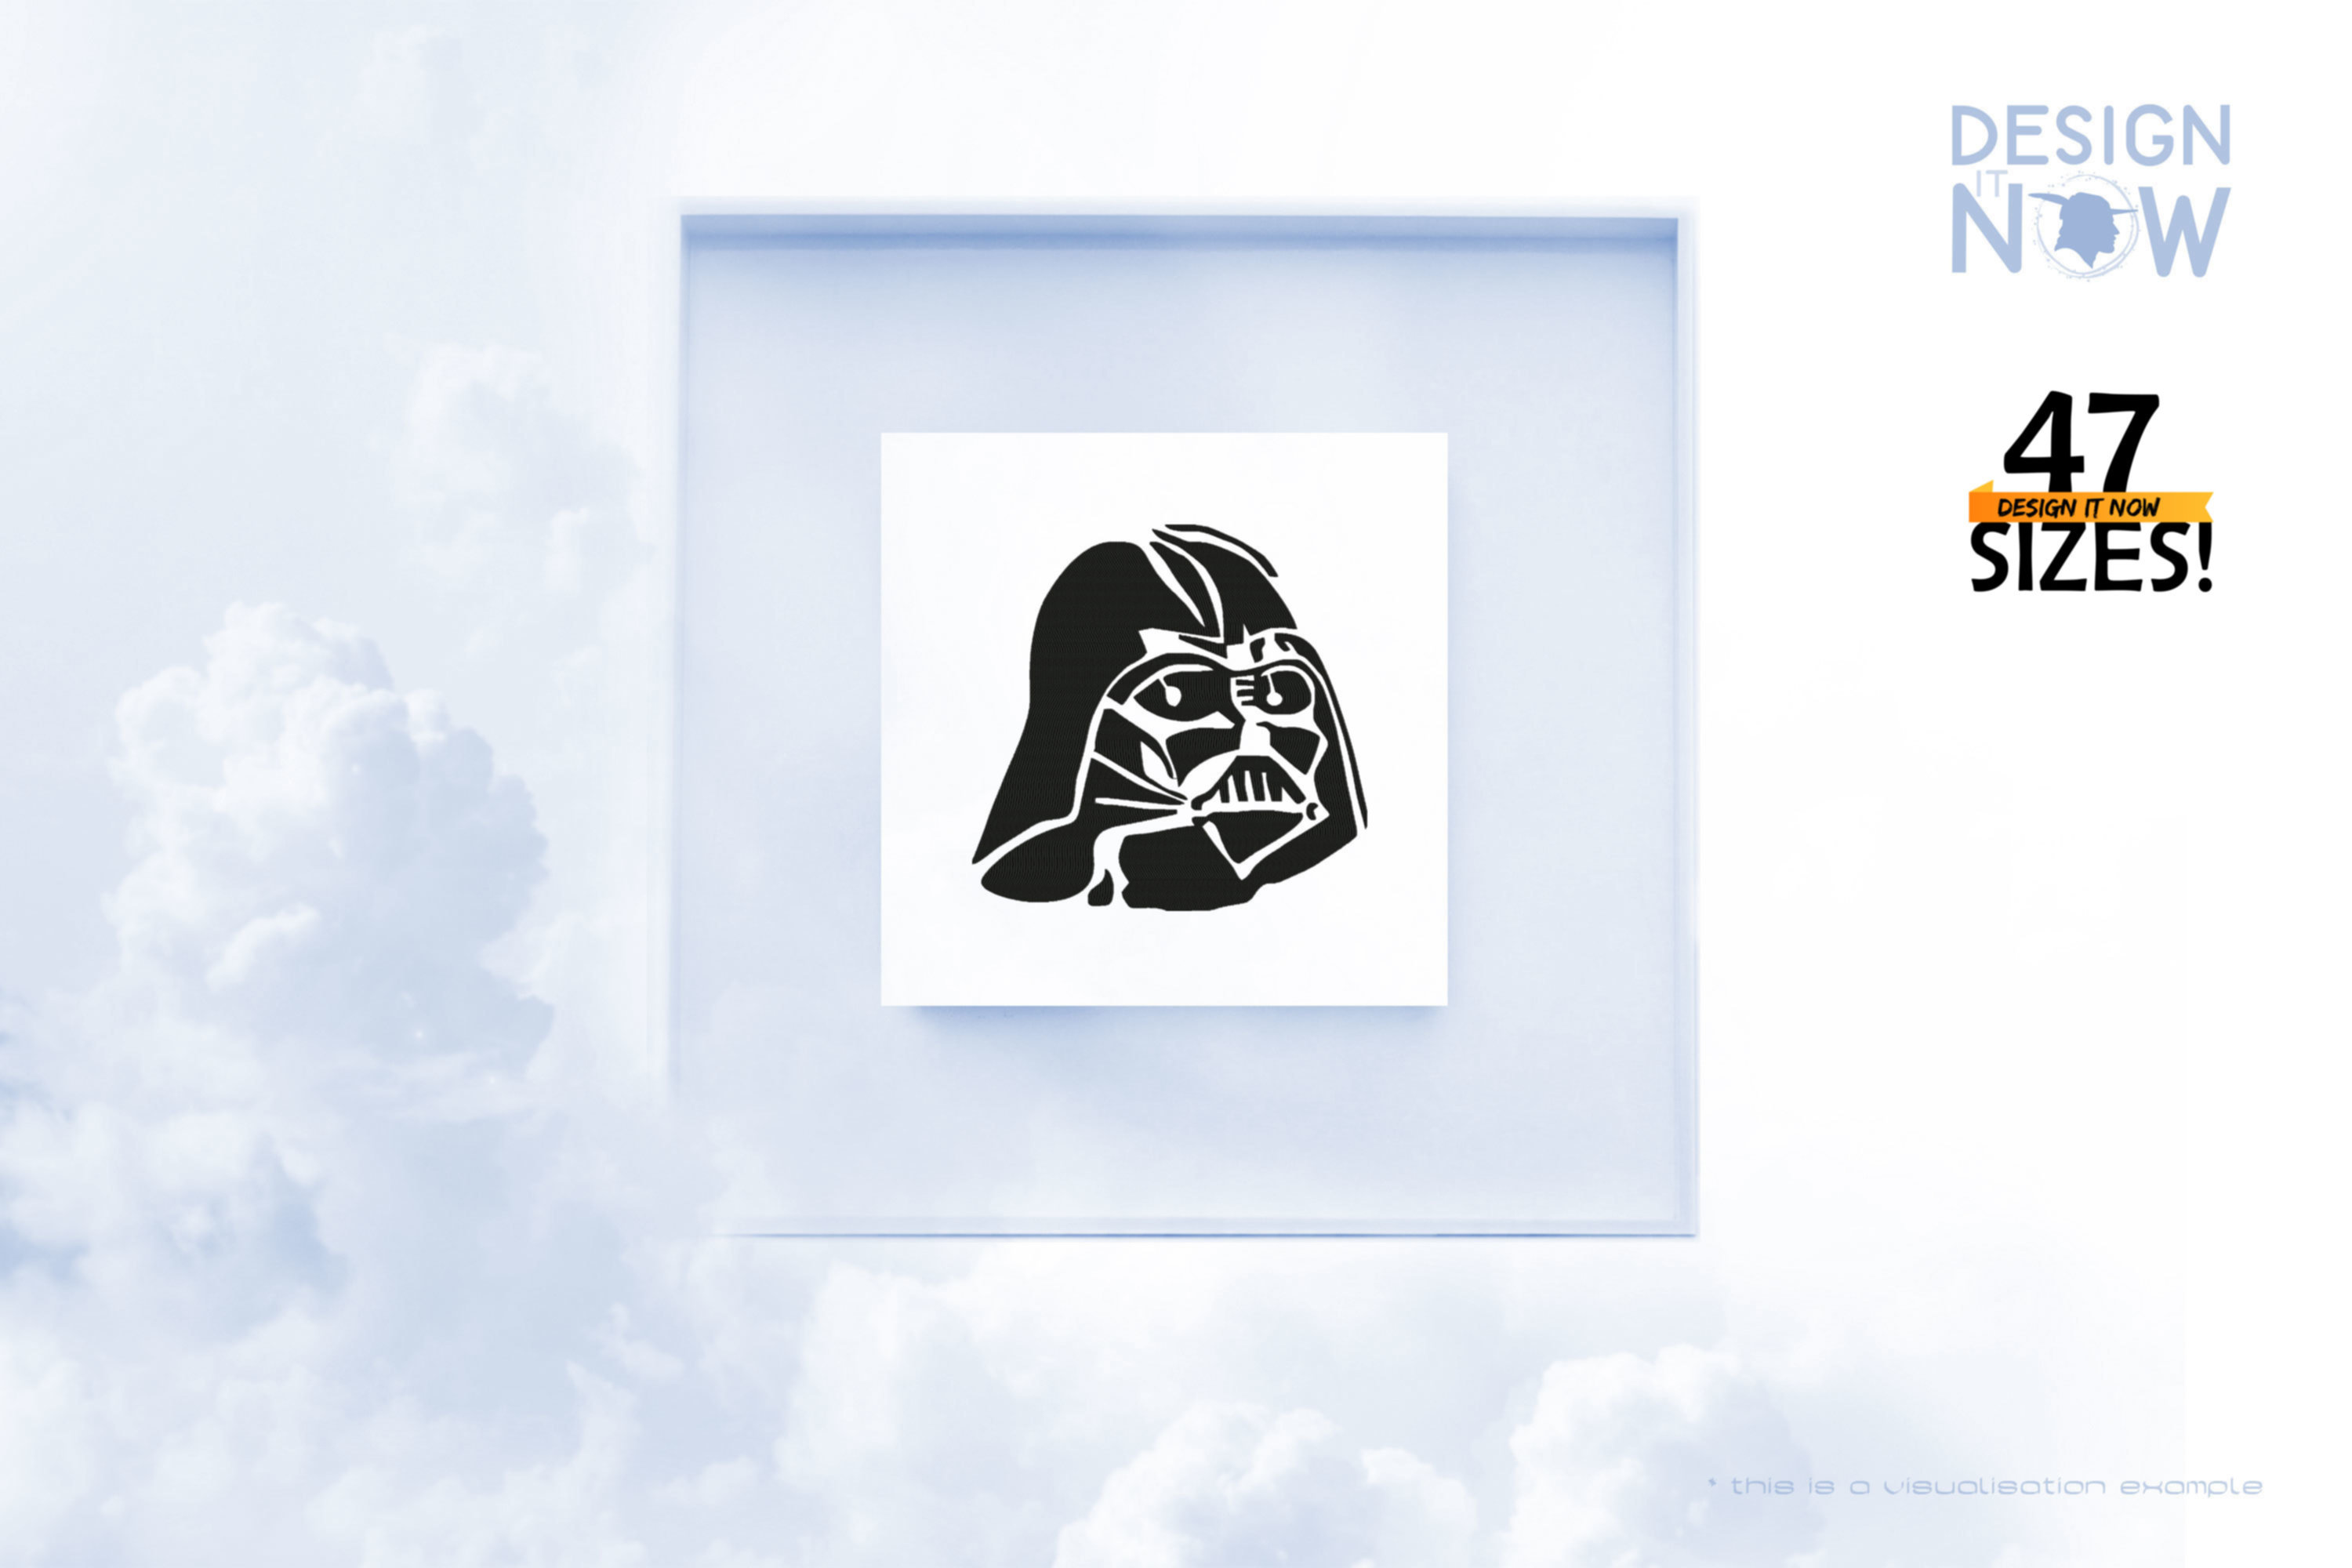 Tribute To Fictional Character Darth Vader aka Darth Vader